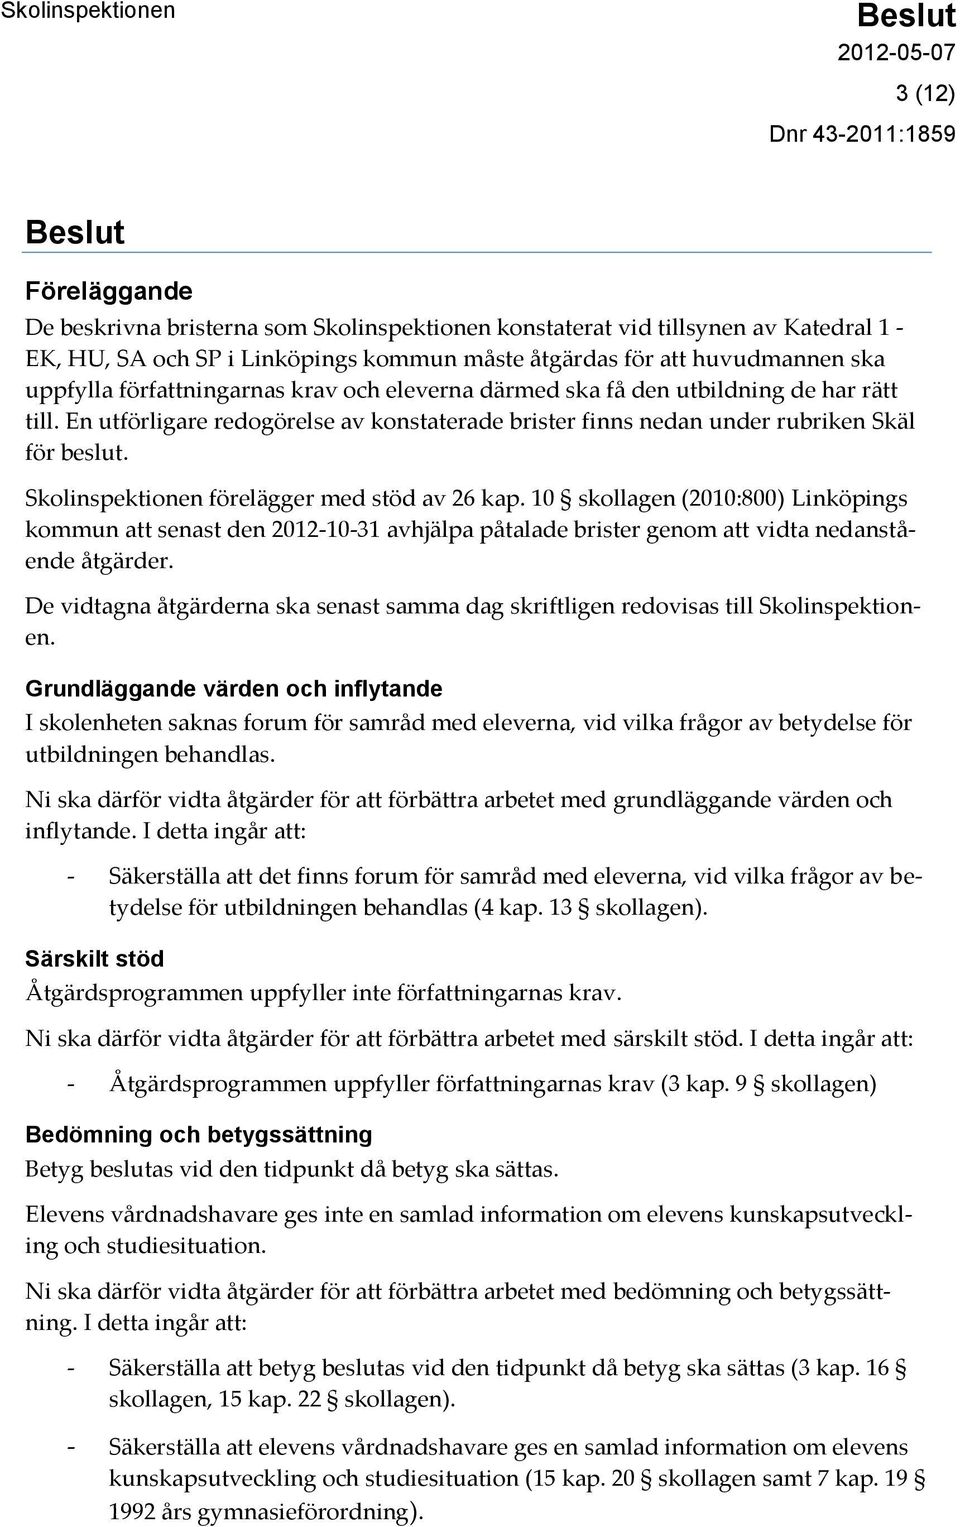 Skolinspektionen förelägger med stöd av 26 kap. 10 skollagen (2010:800) Linköpings kommun att senast den 2012-10-31 avhjälpa påtalade brister genom att vidta nedanstående åtgärder.